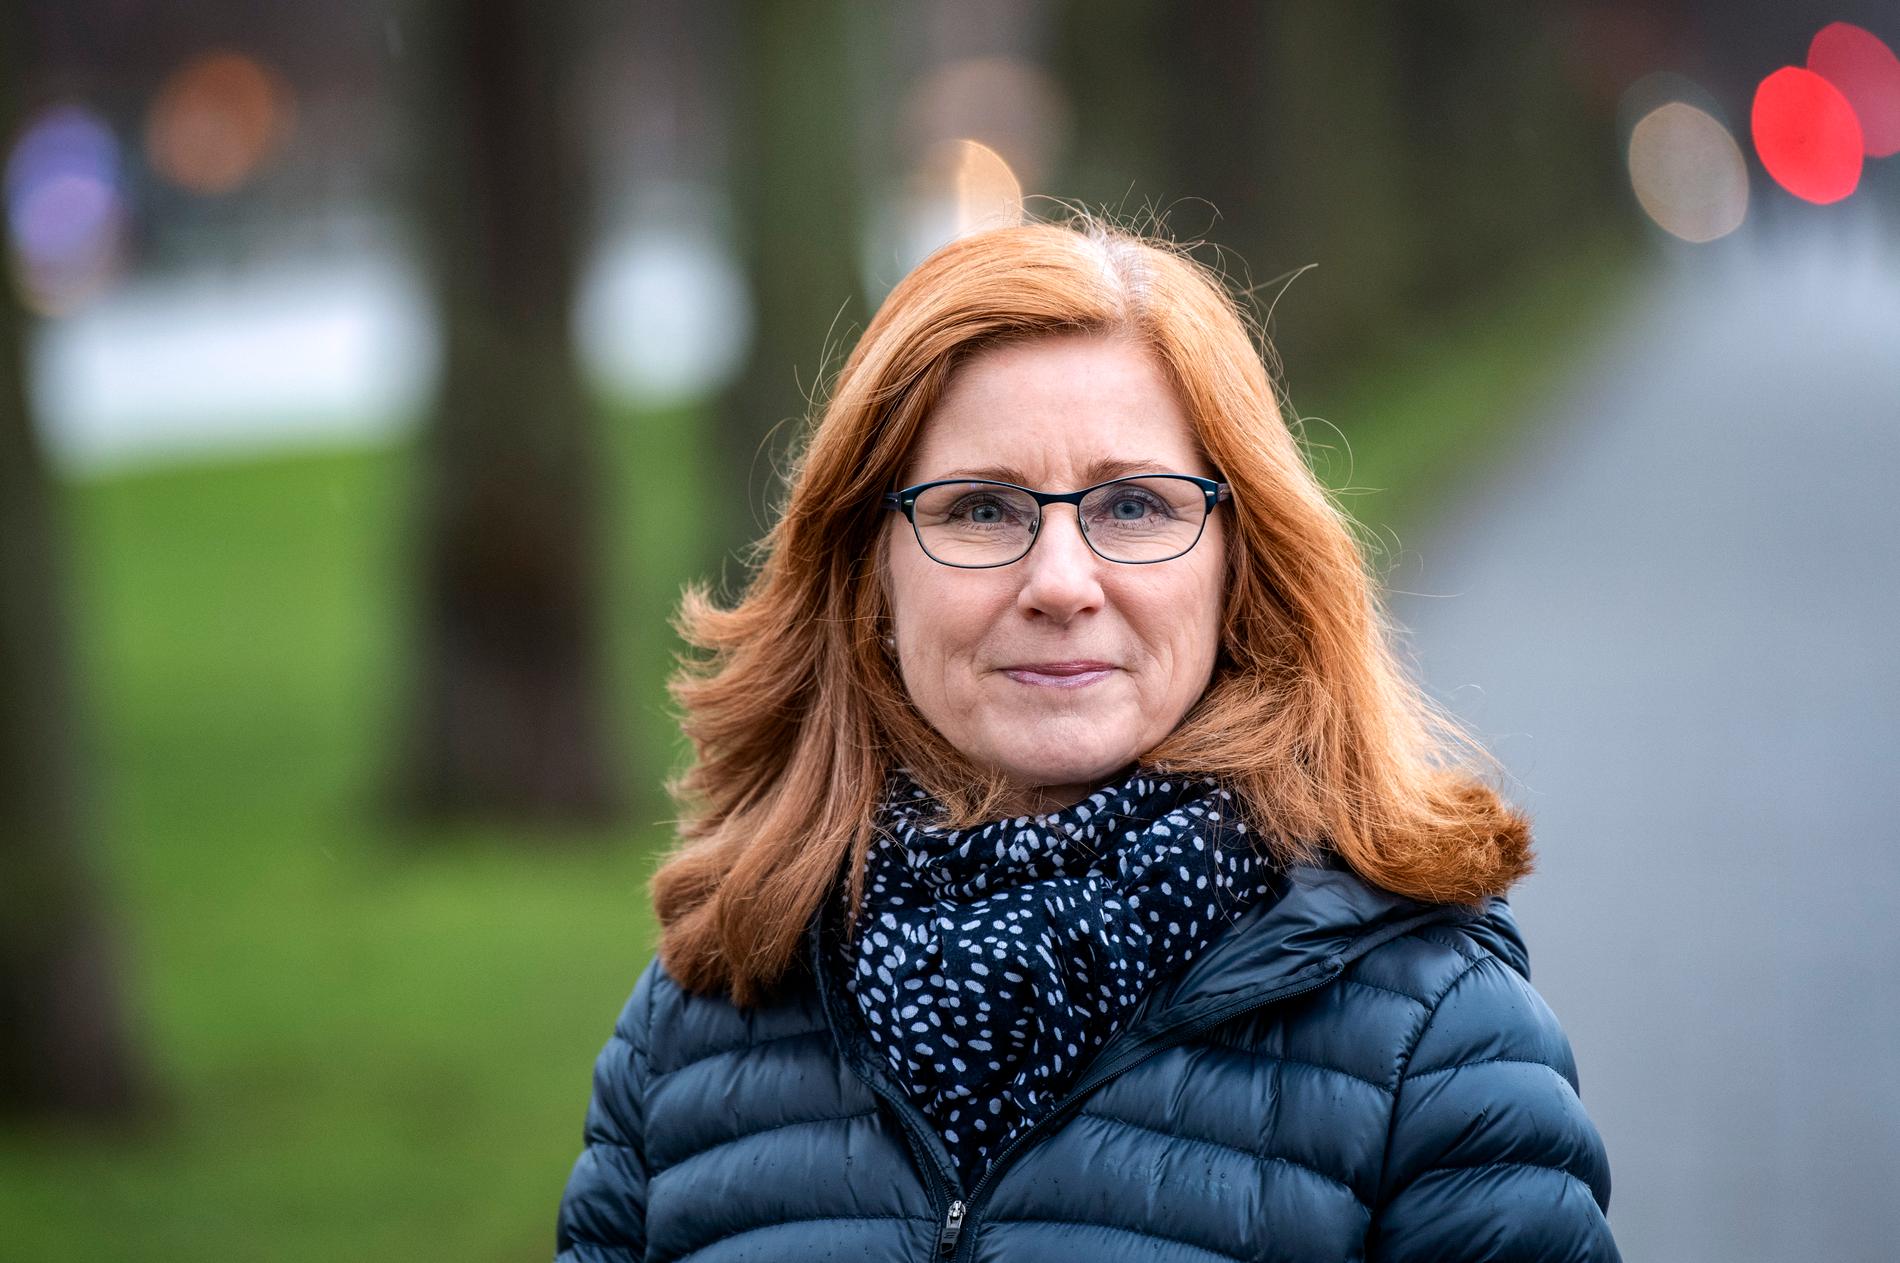 "Vi tycker att domstolarna ofta ställer väldigt höga krav. Det känns som det är trögt och att de kan uppfattas så att det på vissa håll finns en obenägenhet att vilja döma", säger chefsåklagare Kristina Falk Strand vid Riksenheten för miljö- och arbetsmiljömål i Malmö.